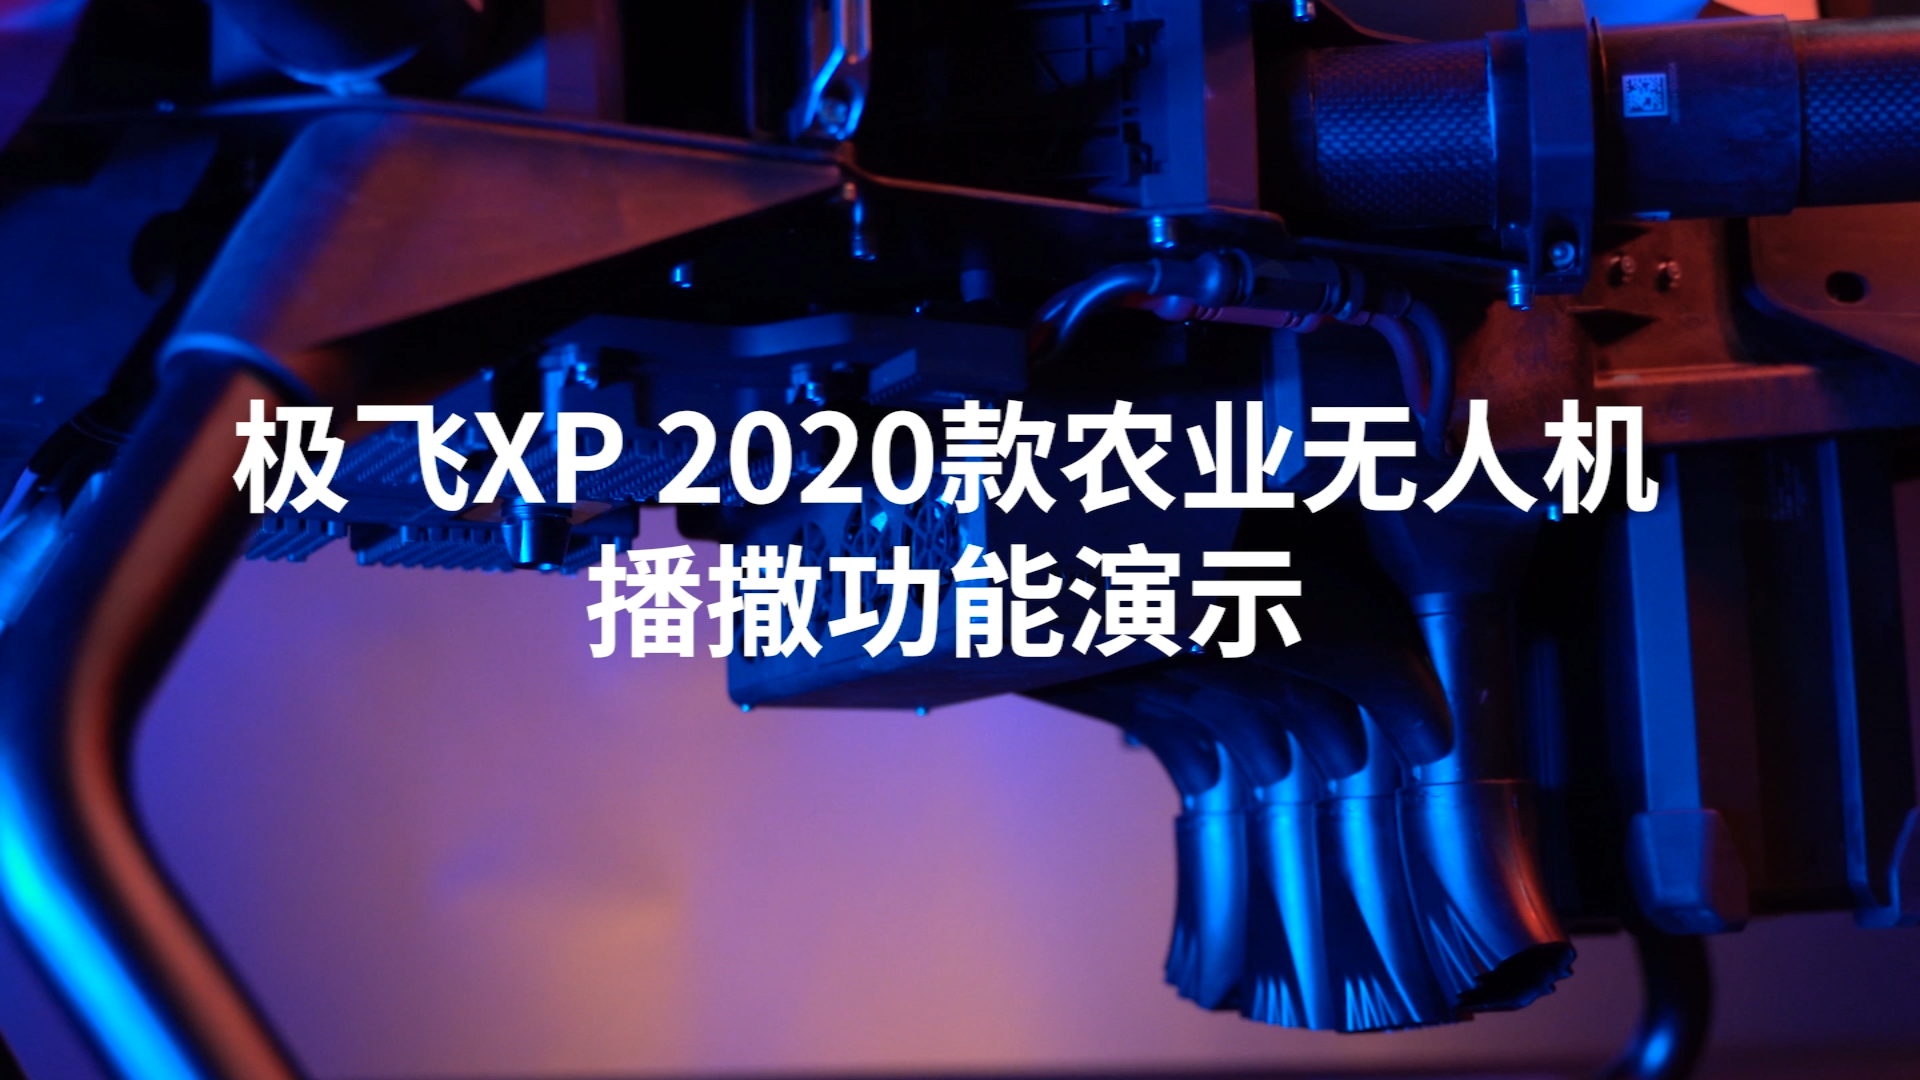  極飛XP 2020款農業無人機播撒功能視頻演示